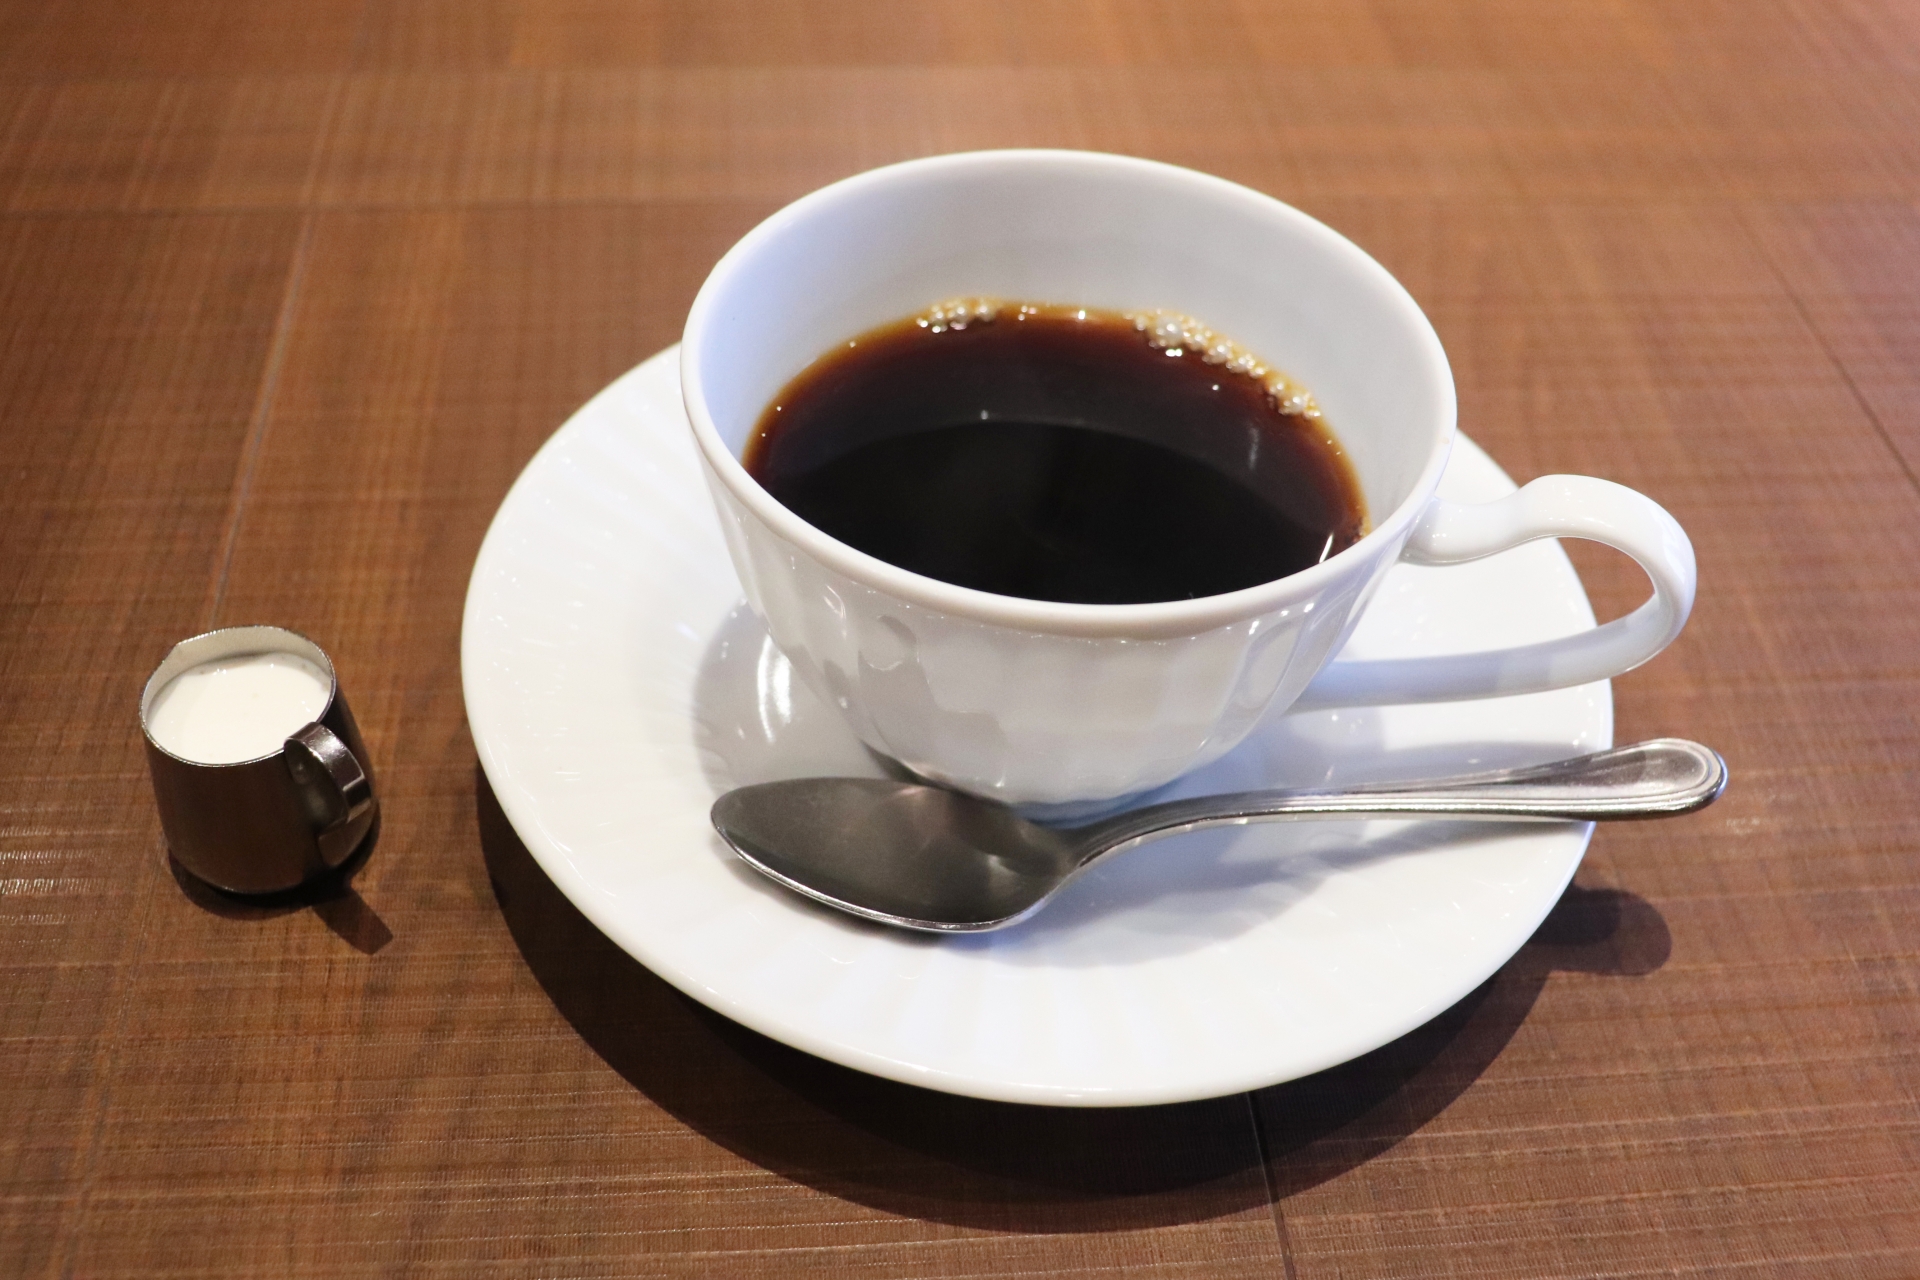 食後 の コーヒー は 体 に 悪い